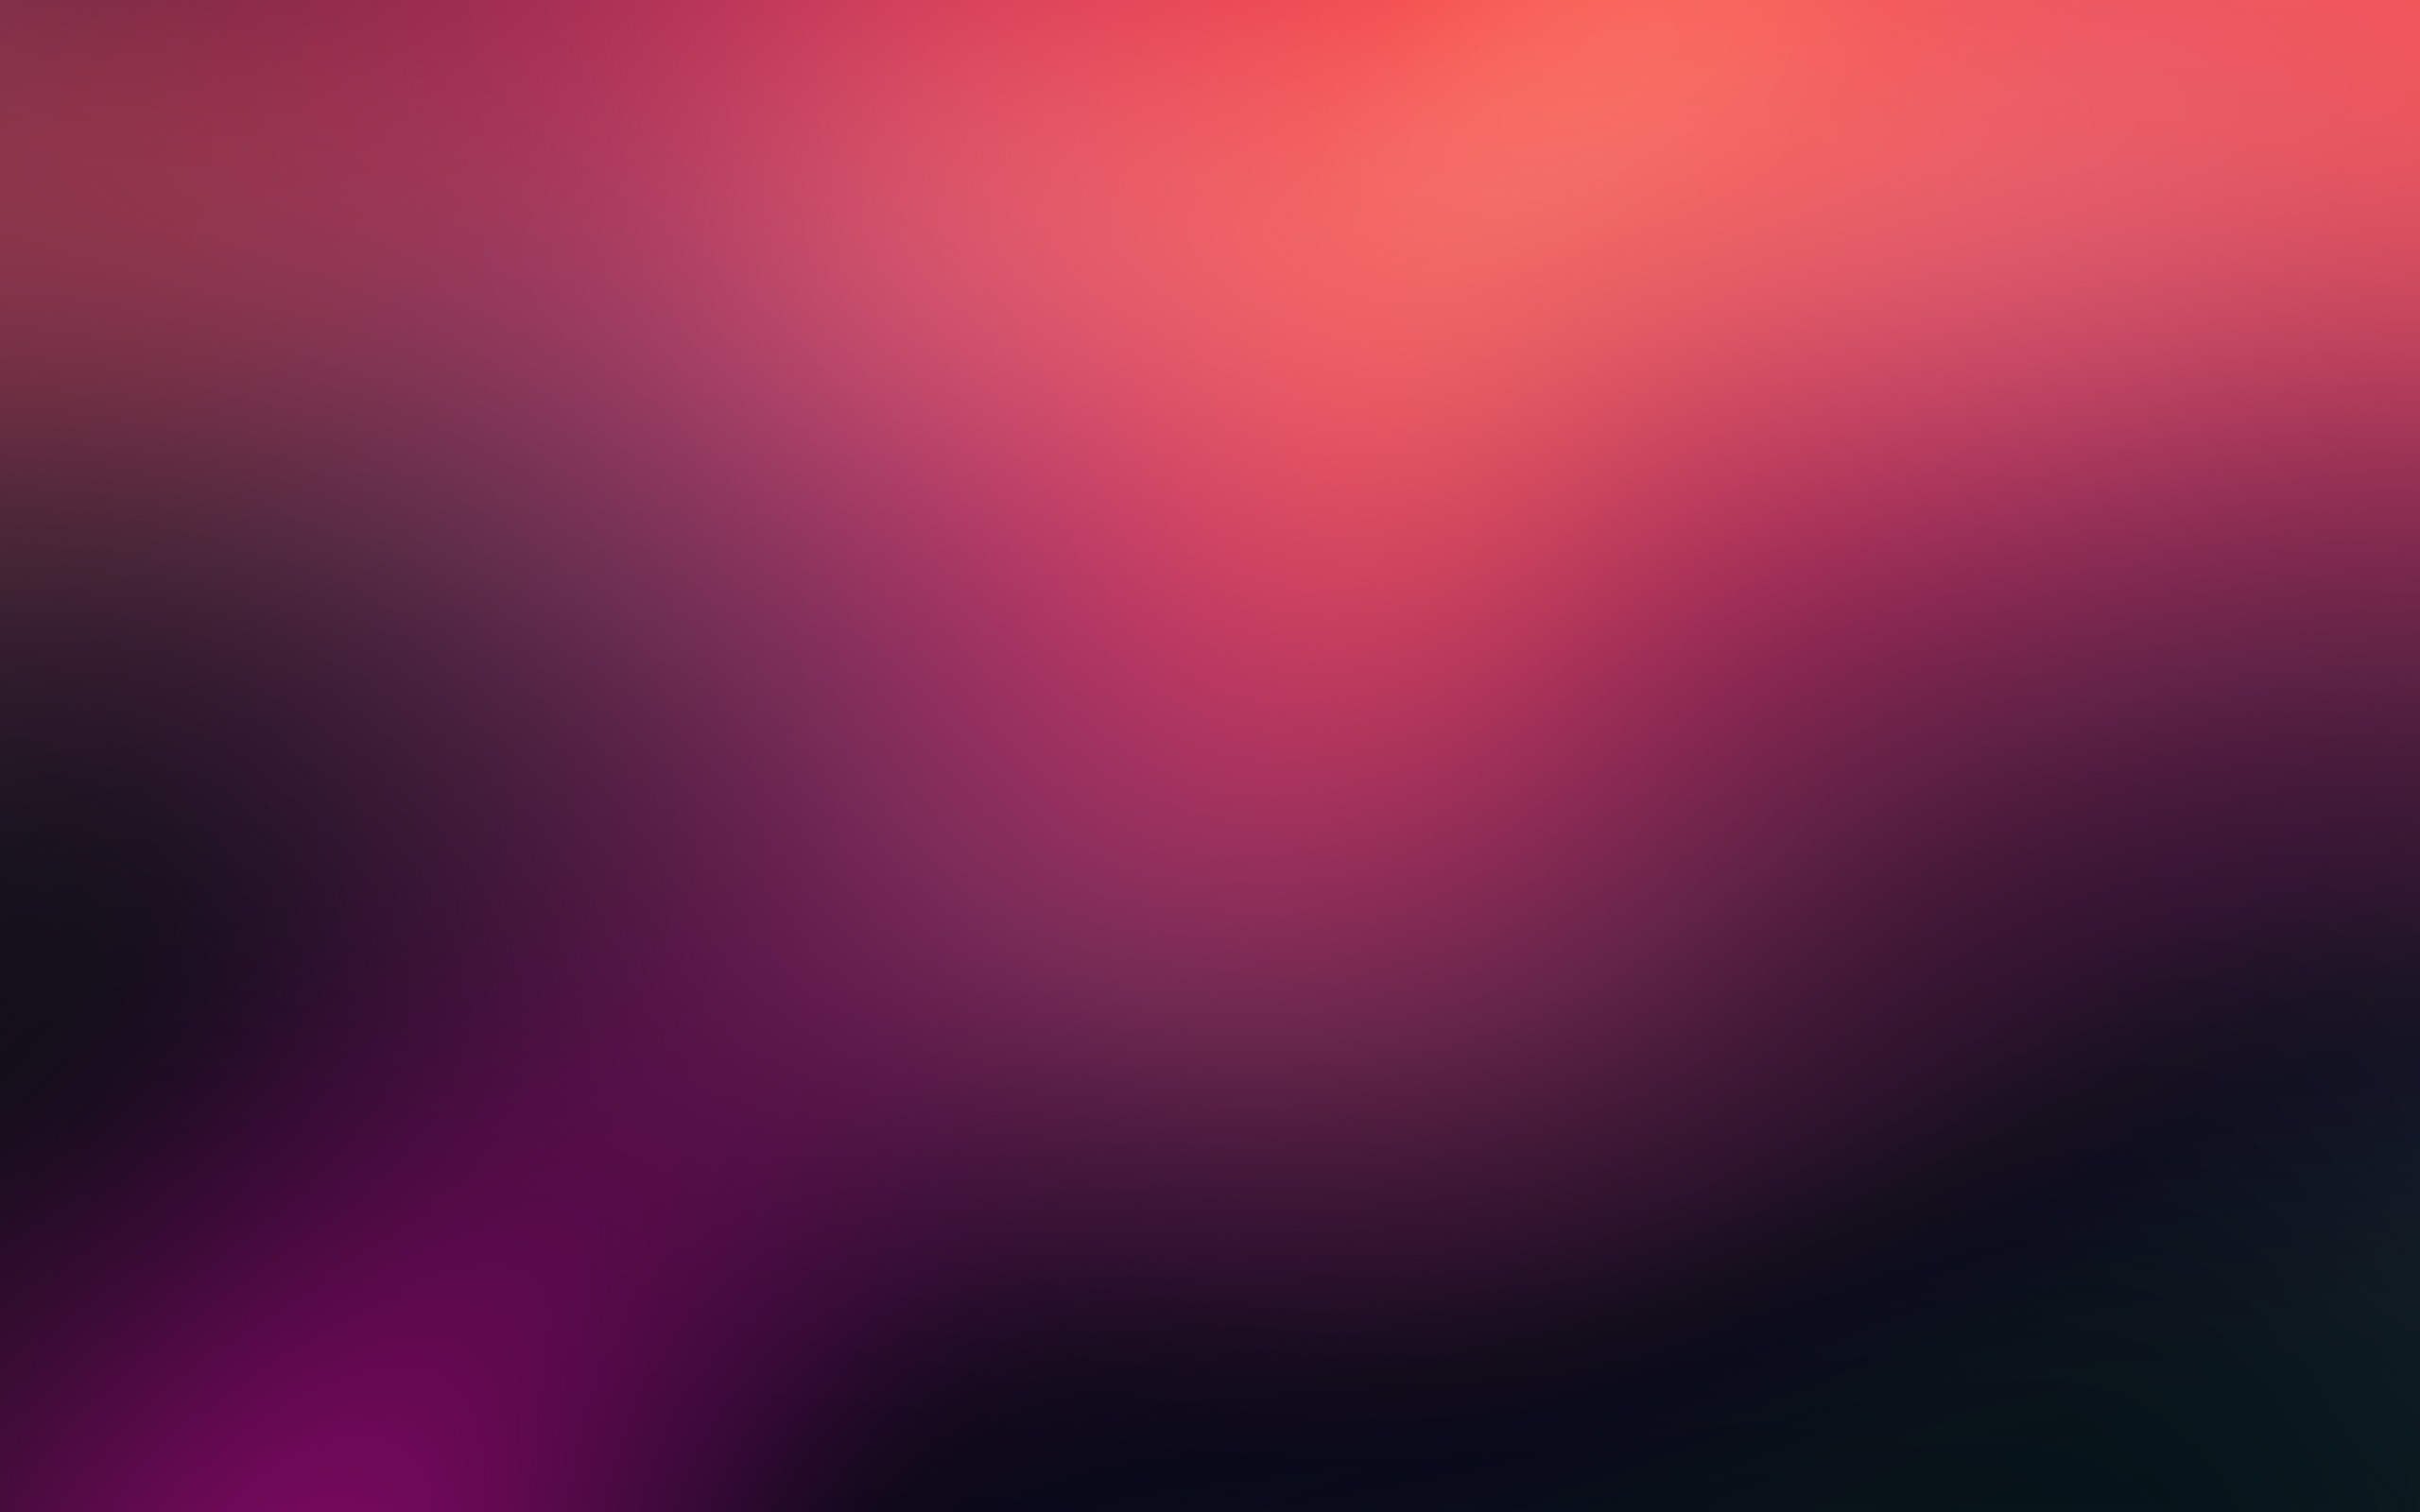 Một hình nền 4k màu hồng thật đẹp sẽ khiến cho màn hình thiết bị của bạn trở nên nổi bật và thu hút. Bạn sẽ cảm nhận được màu sắc tươi sáng, hiển thị rõ nét từng chi tiết, tựa như đang được ngắm nhìn một tác phẩm nghệ thuật chân thật.